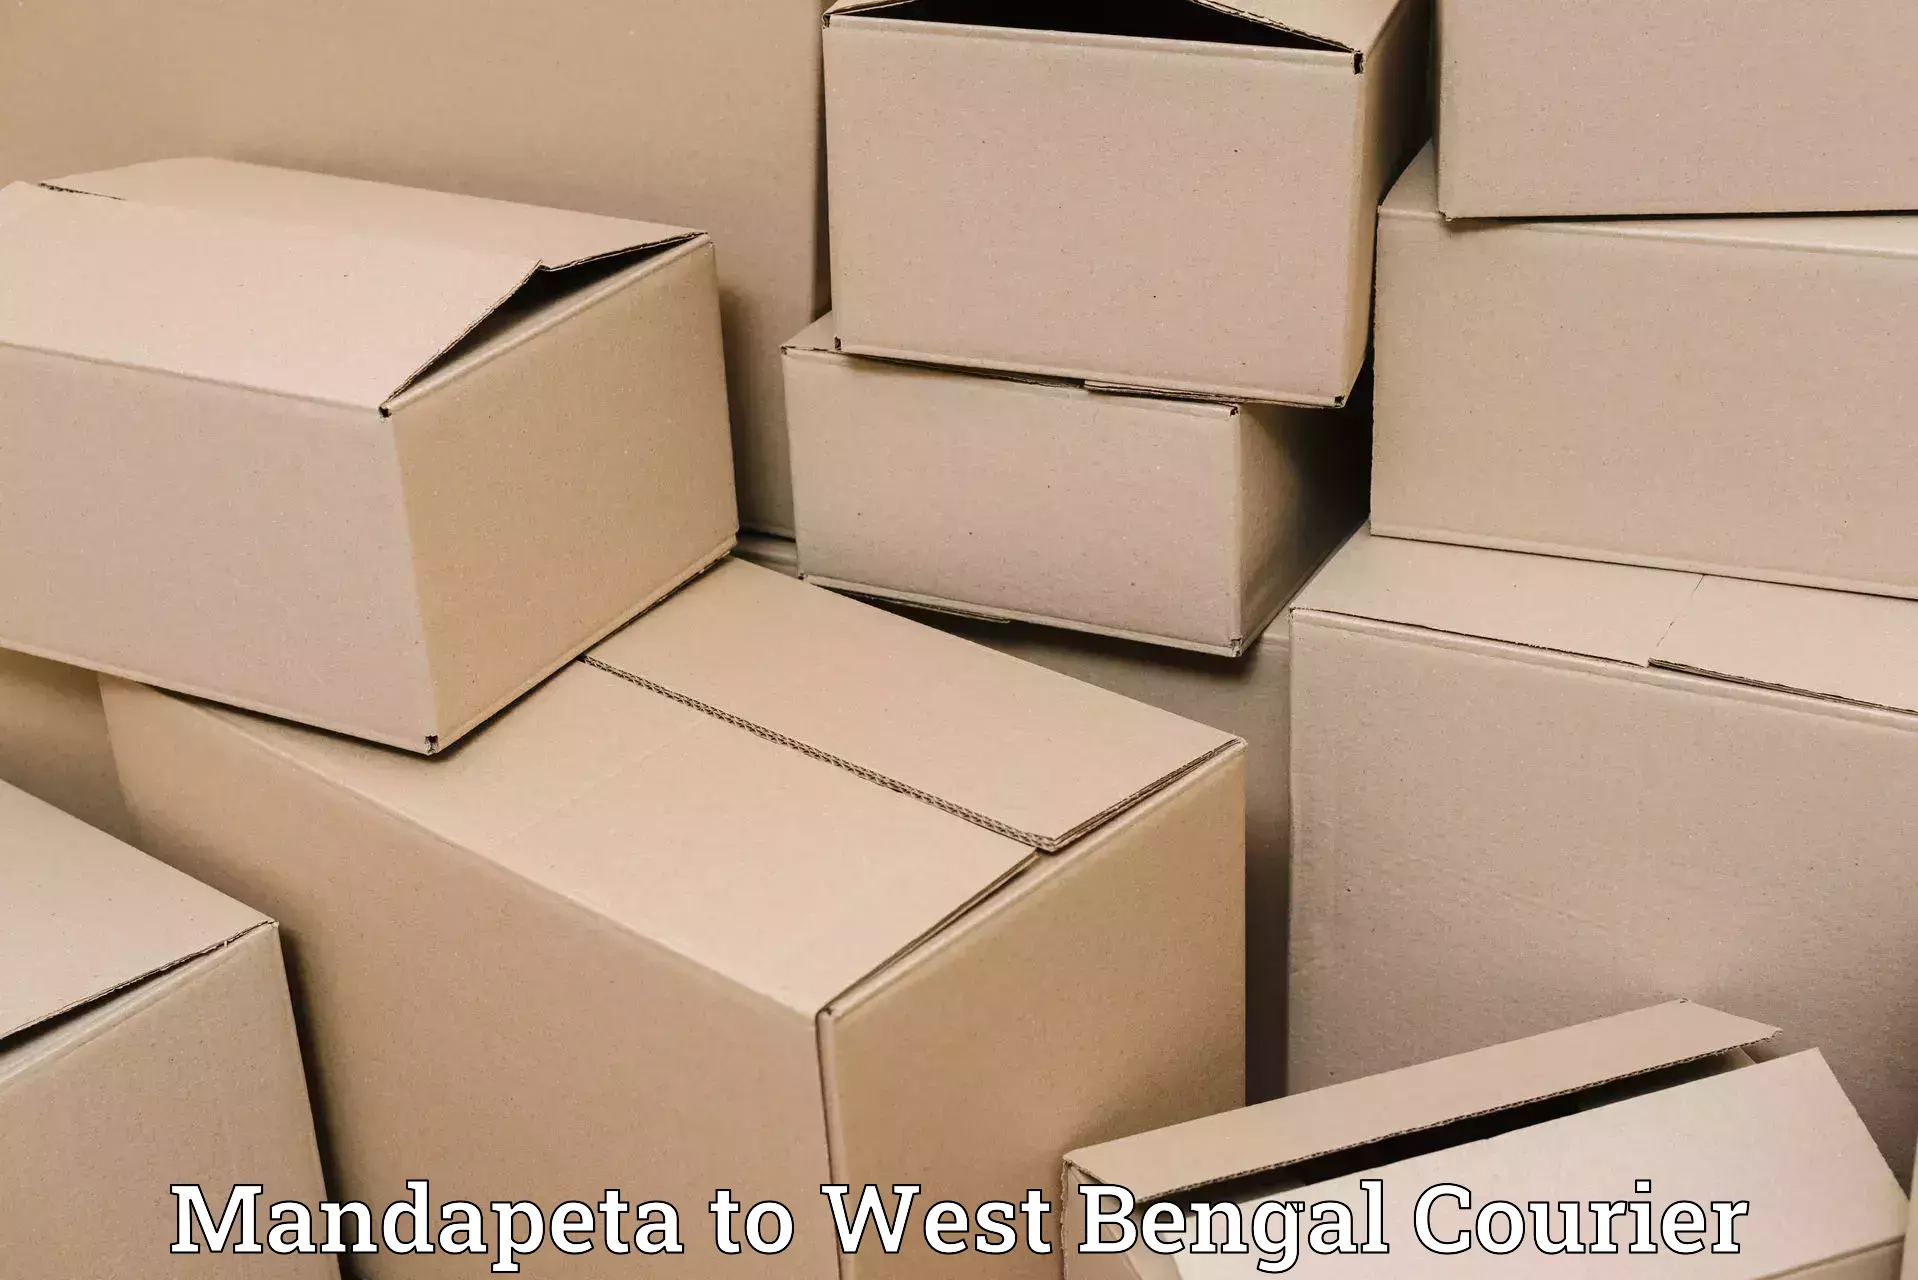 Express courier facilities Mandapeta to West Bengal